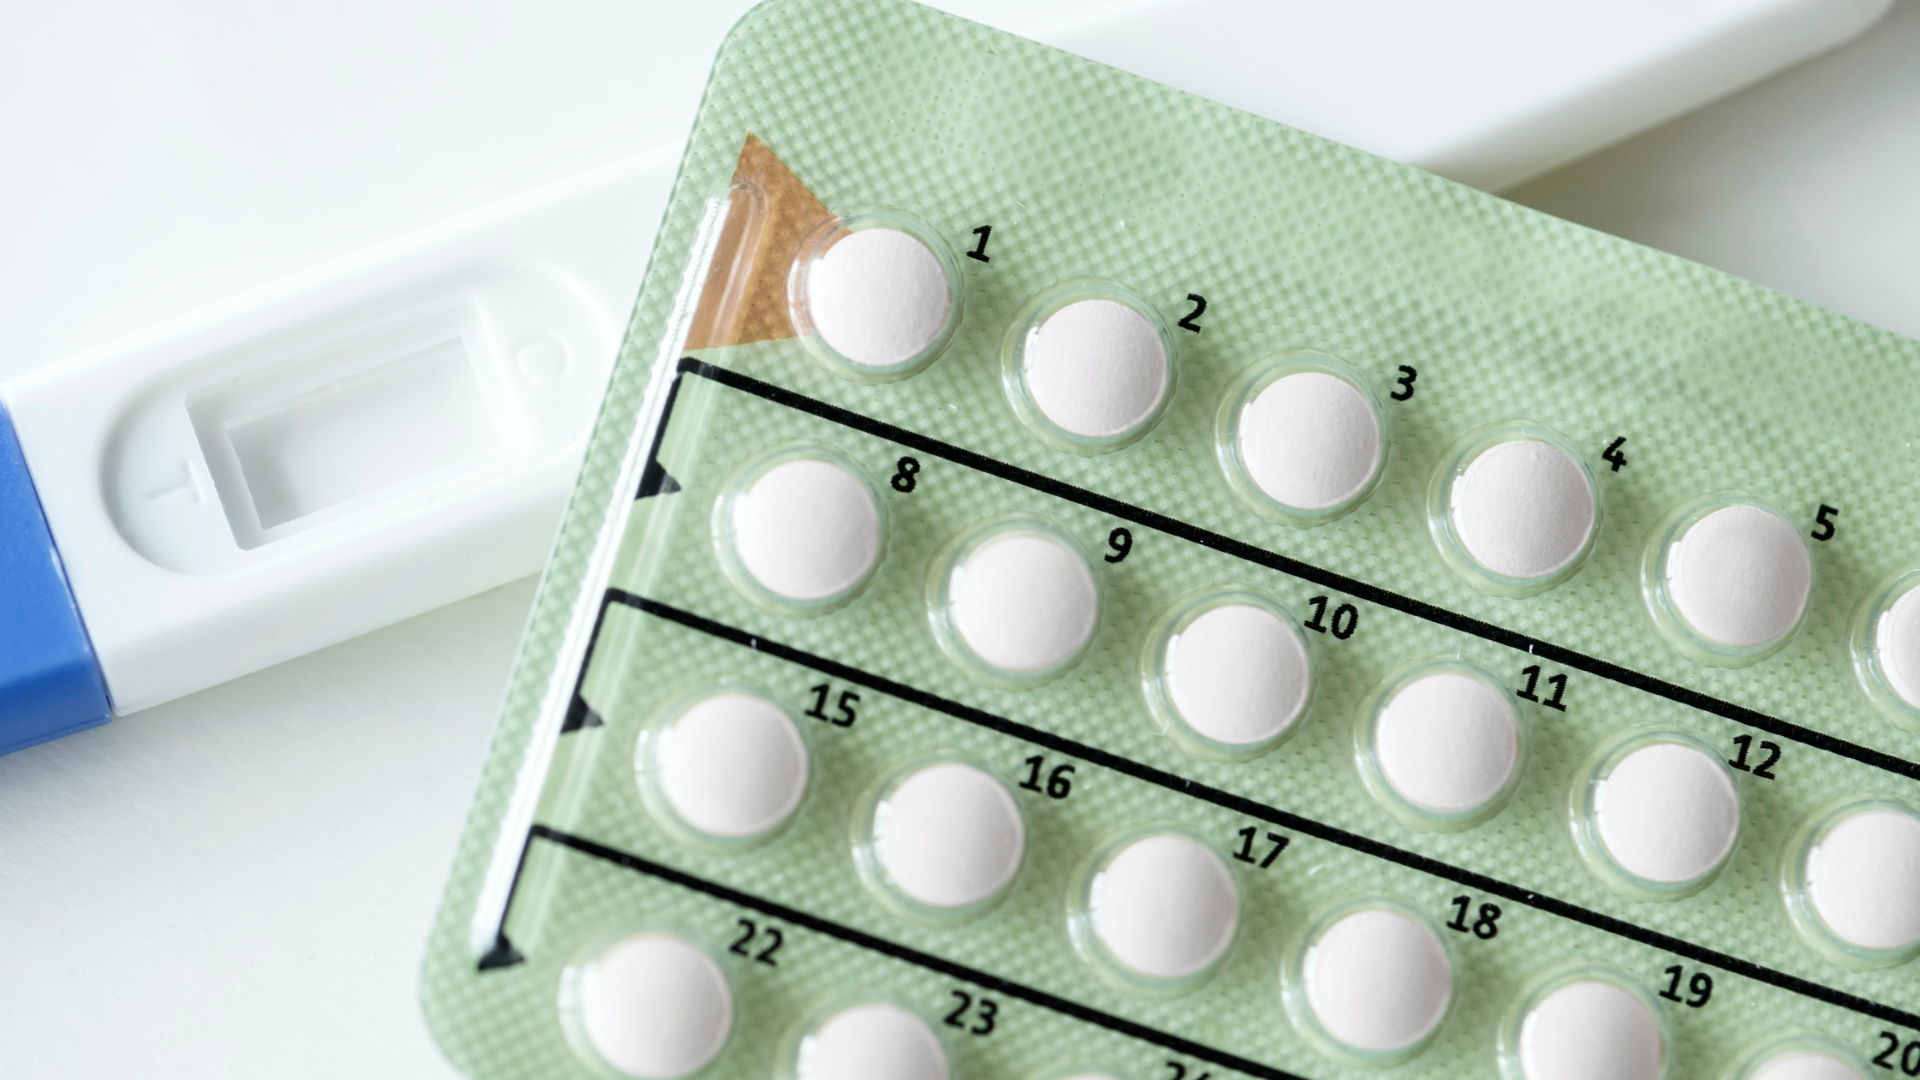 Foto de capa do artigo "Métodos contraceptivos: conheça os principais e as vantagens"